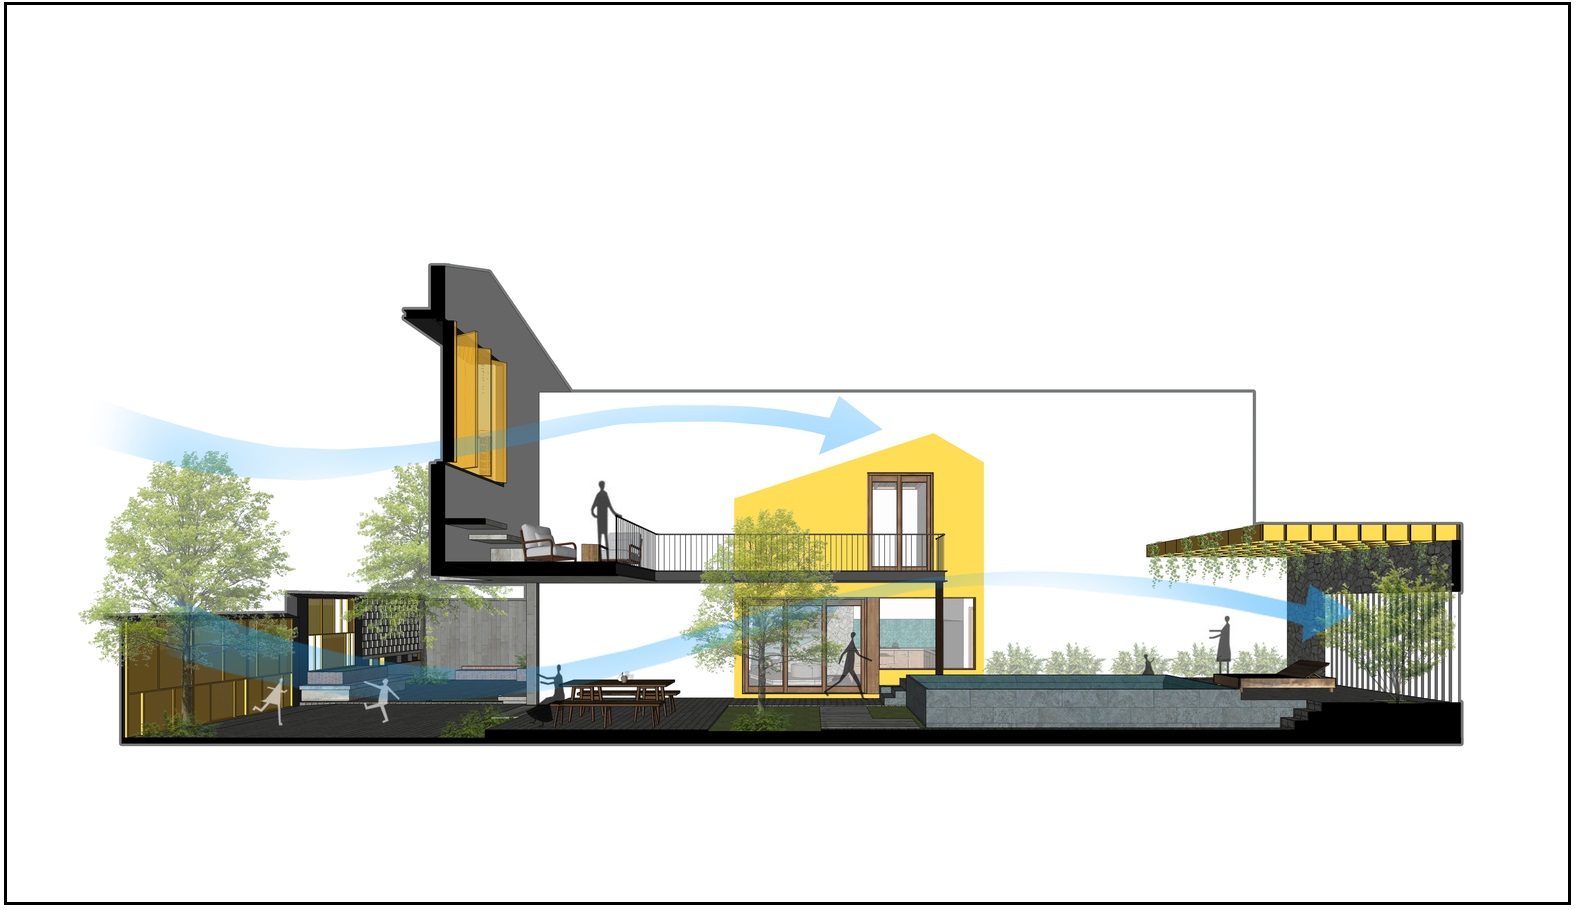 Sơ đồ thiết kế mặt bằng và hình ảnh mặt cắt của ngôi nhà do IZ Architects cung cấp.